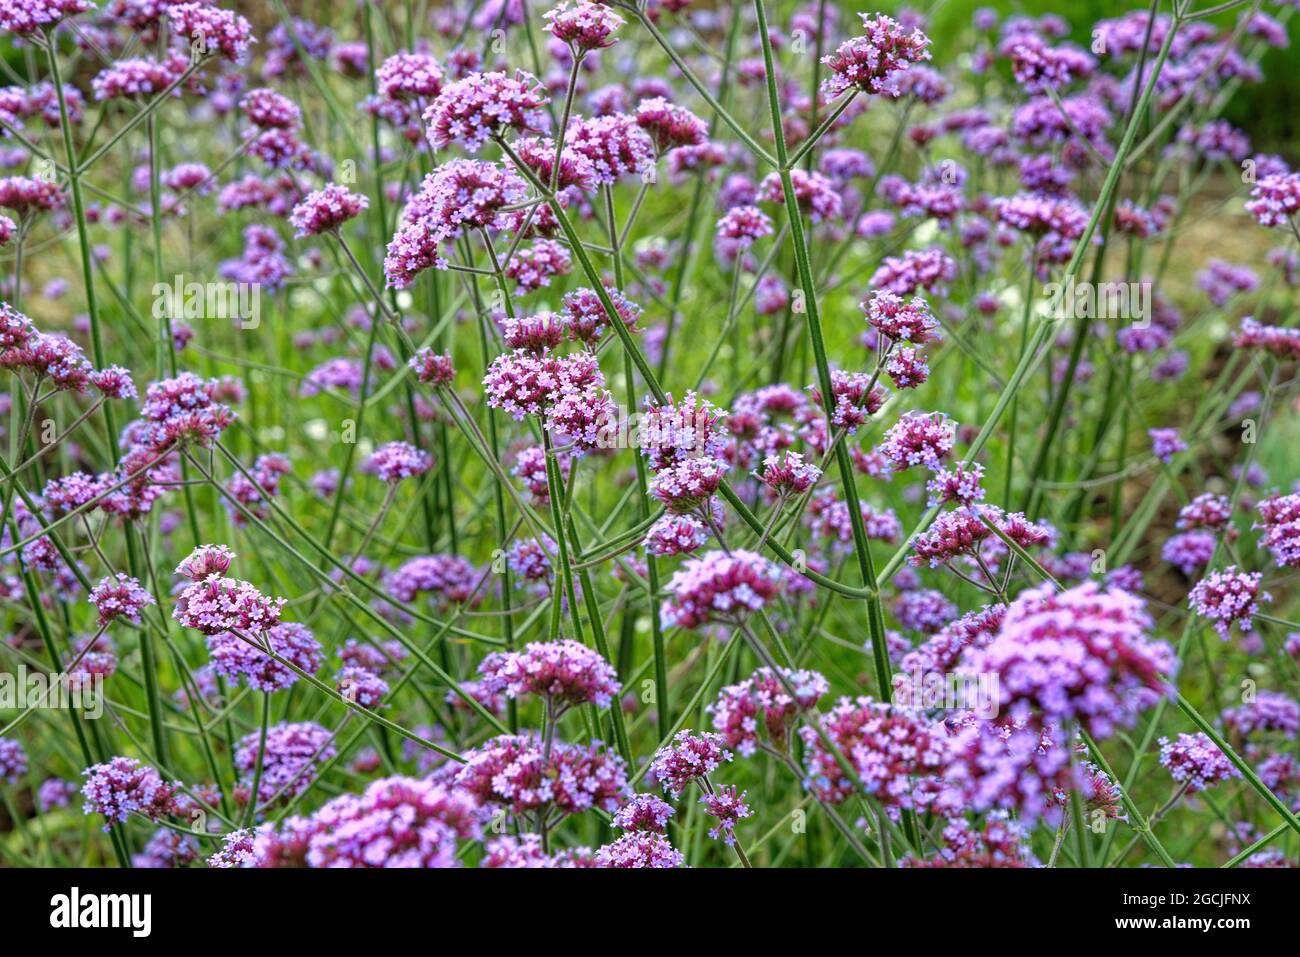 Nahaufnahme der violetten Blüten der Verbena bonariensis, die in einem Garten wachsen Stockfoto